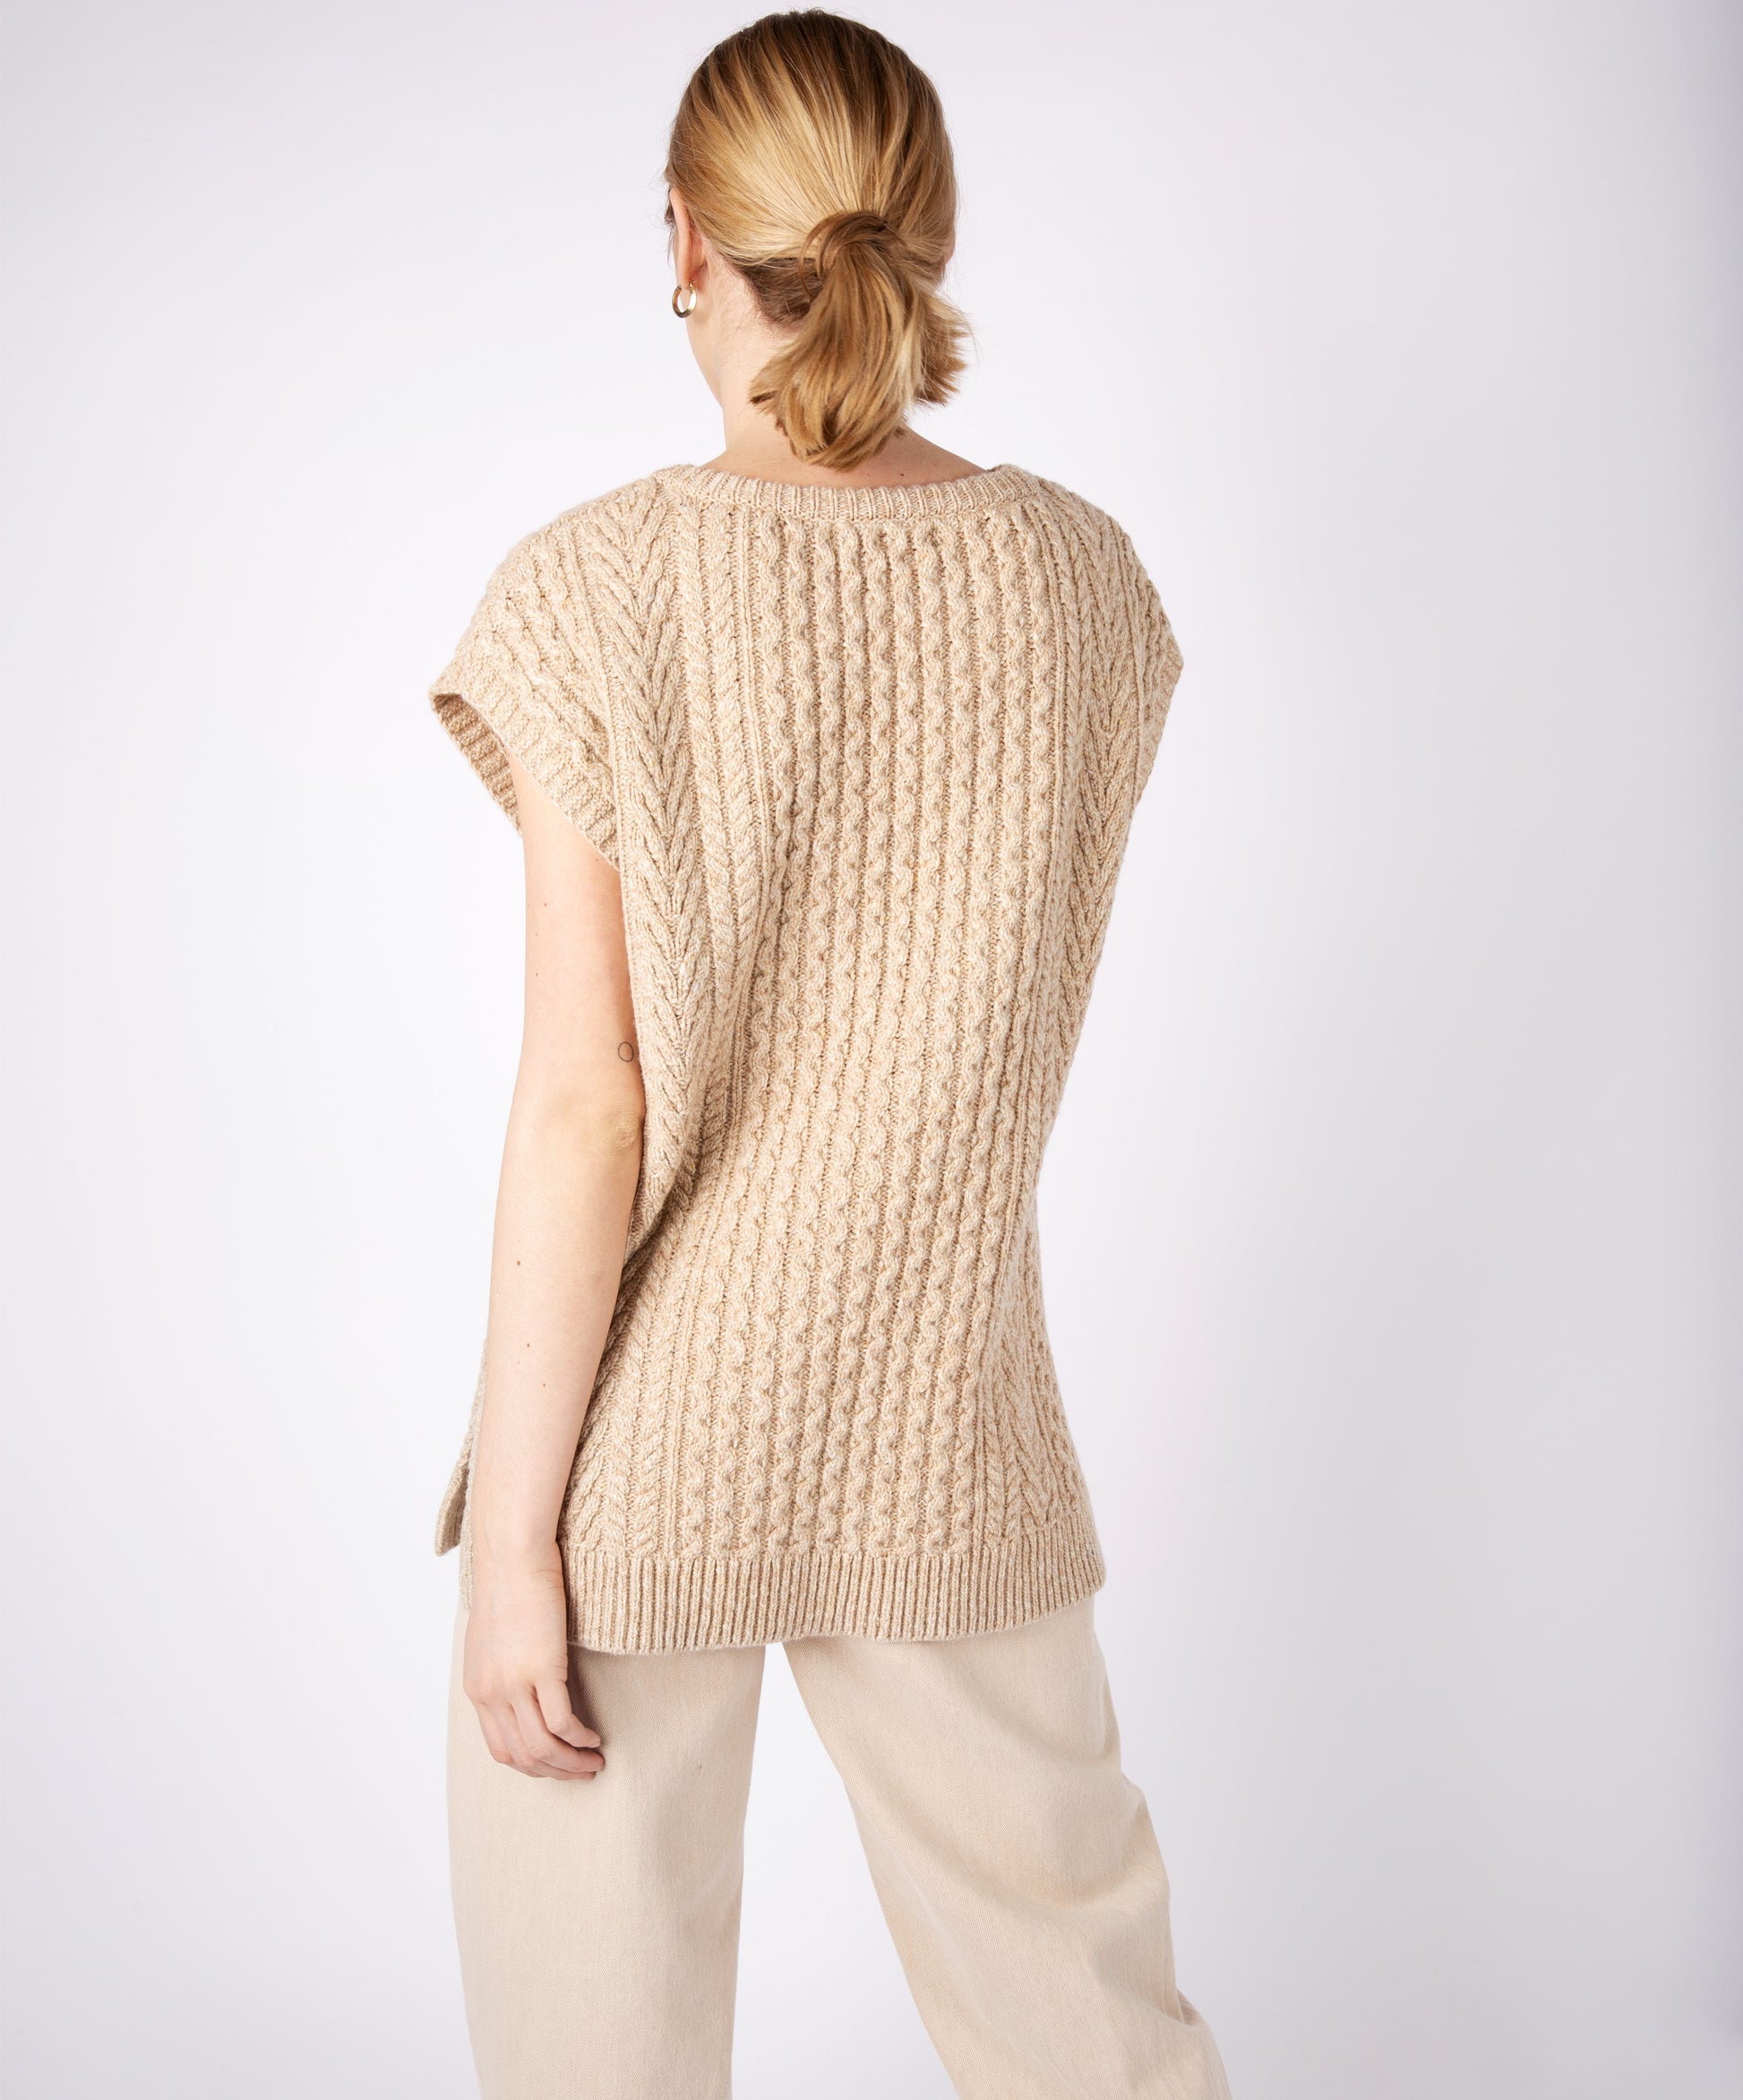 IrelandsEye Knitwear Fennel Oversized Aran Sweater Vest Dark Denim